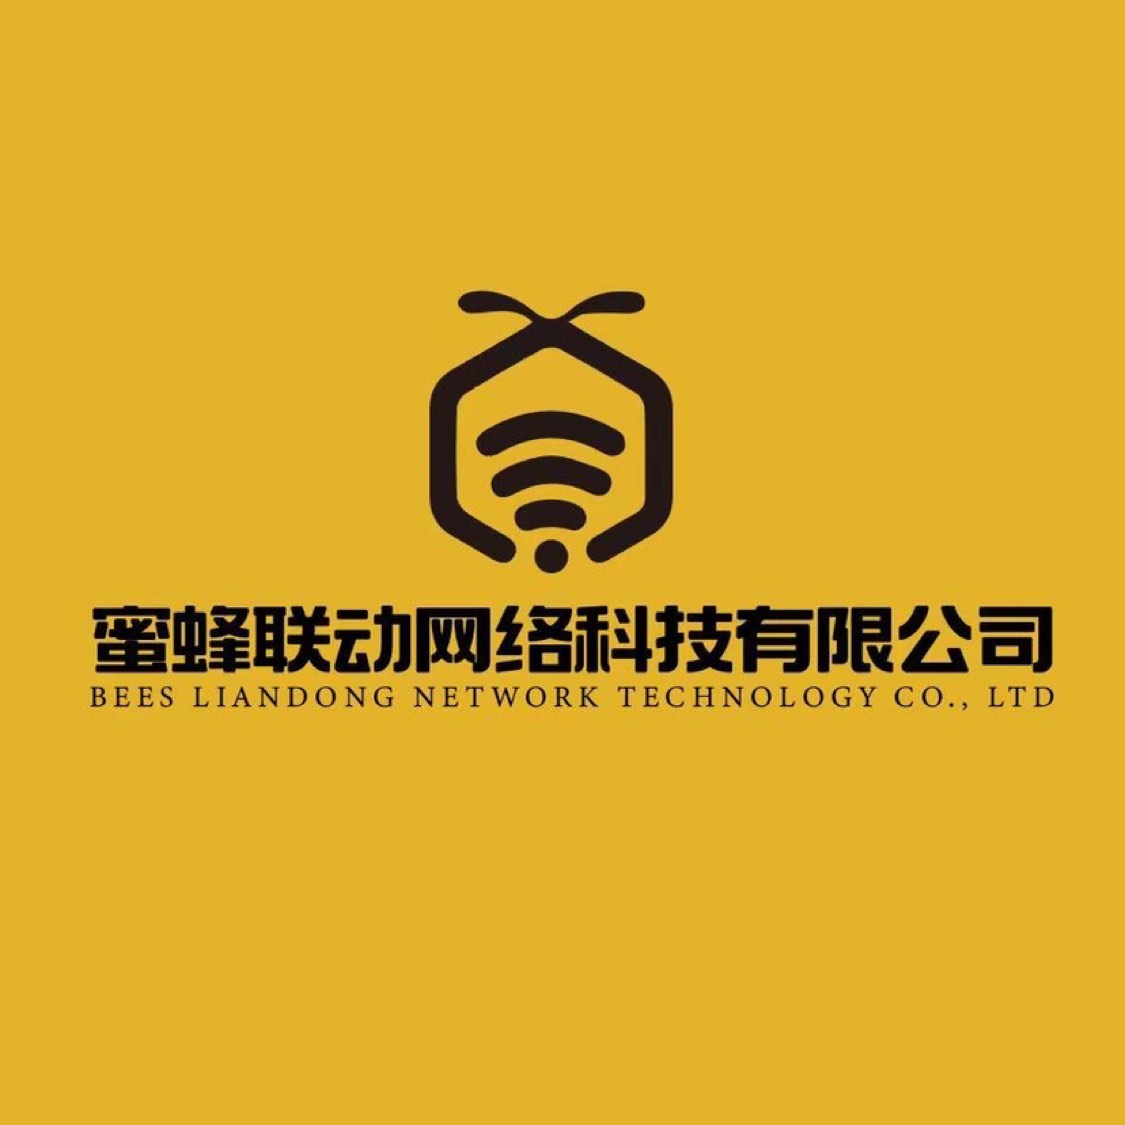 福建省蜜蜂联动网络科技有限公司